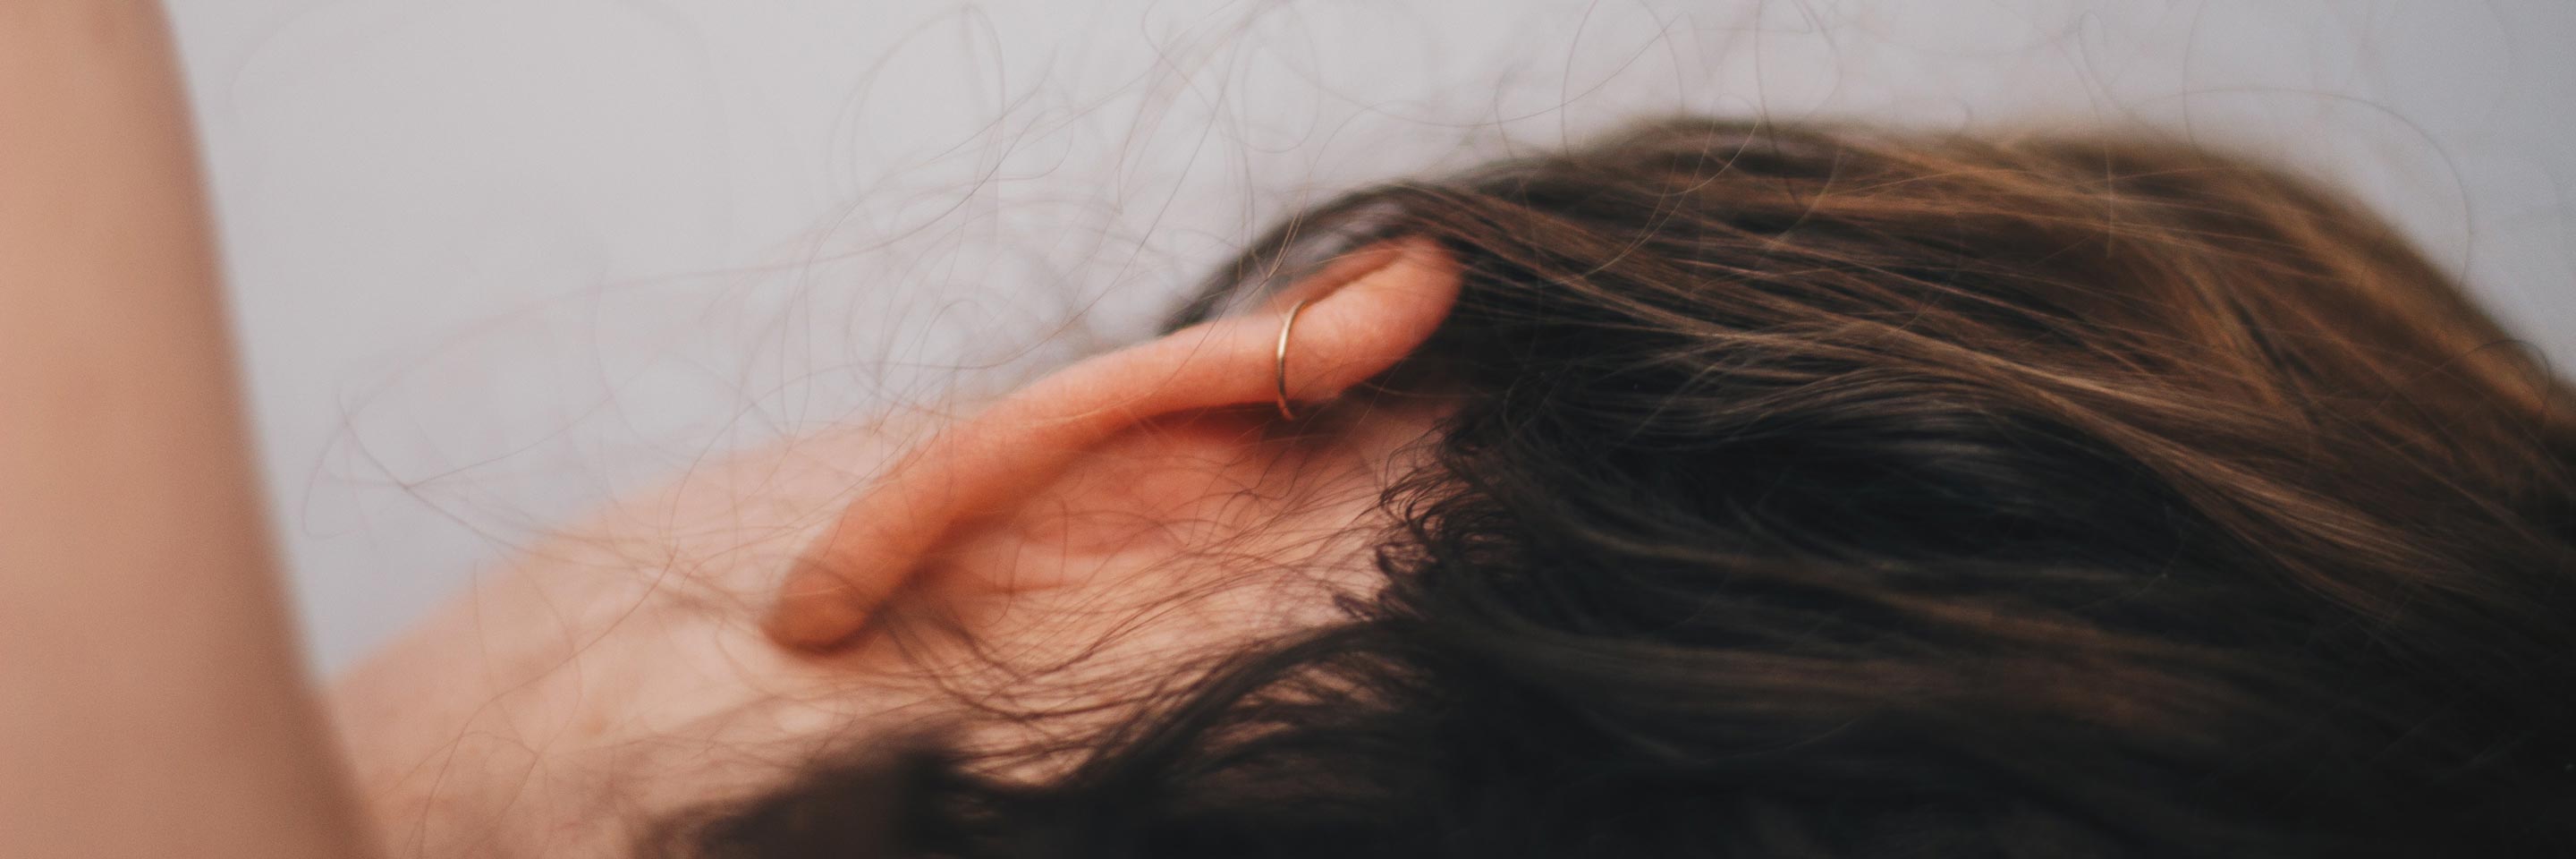 8 модных вариантов пирсинга уха и их названия